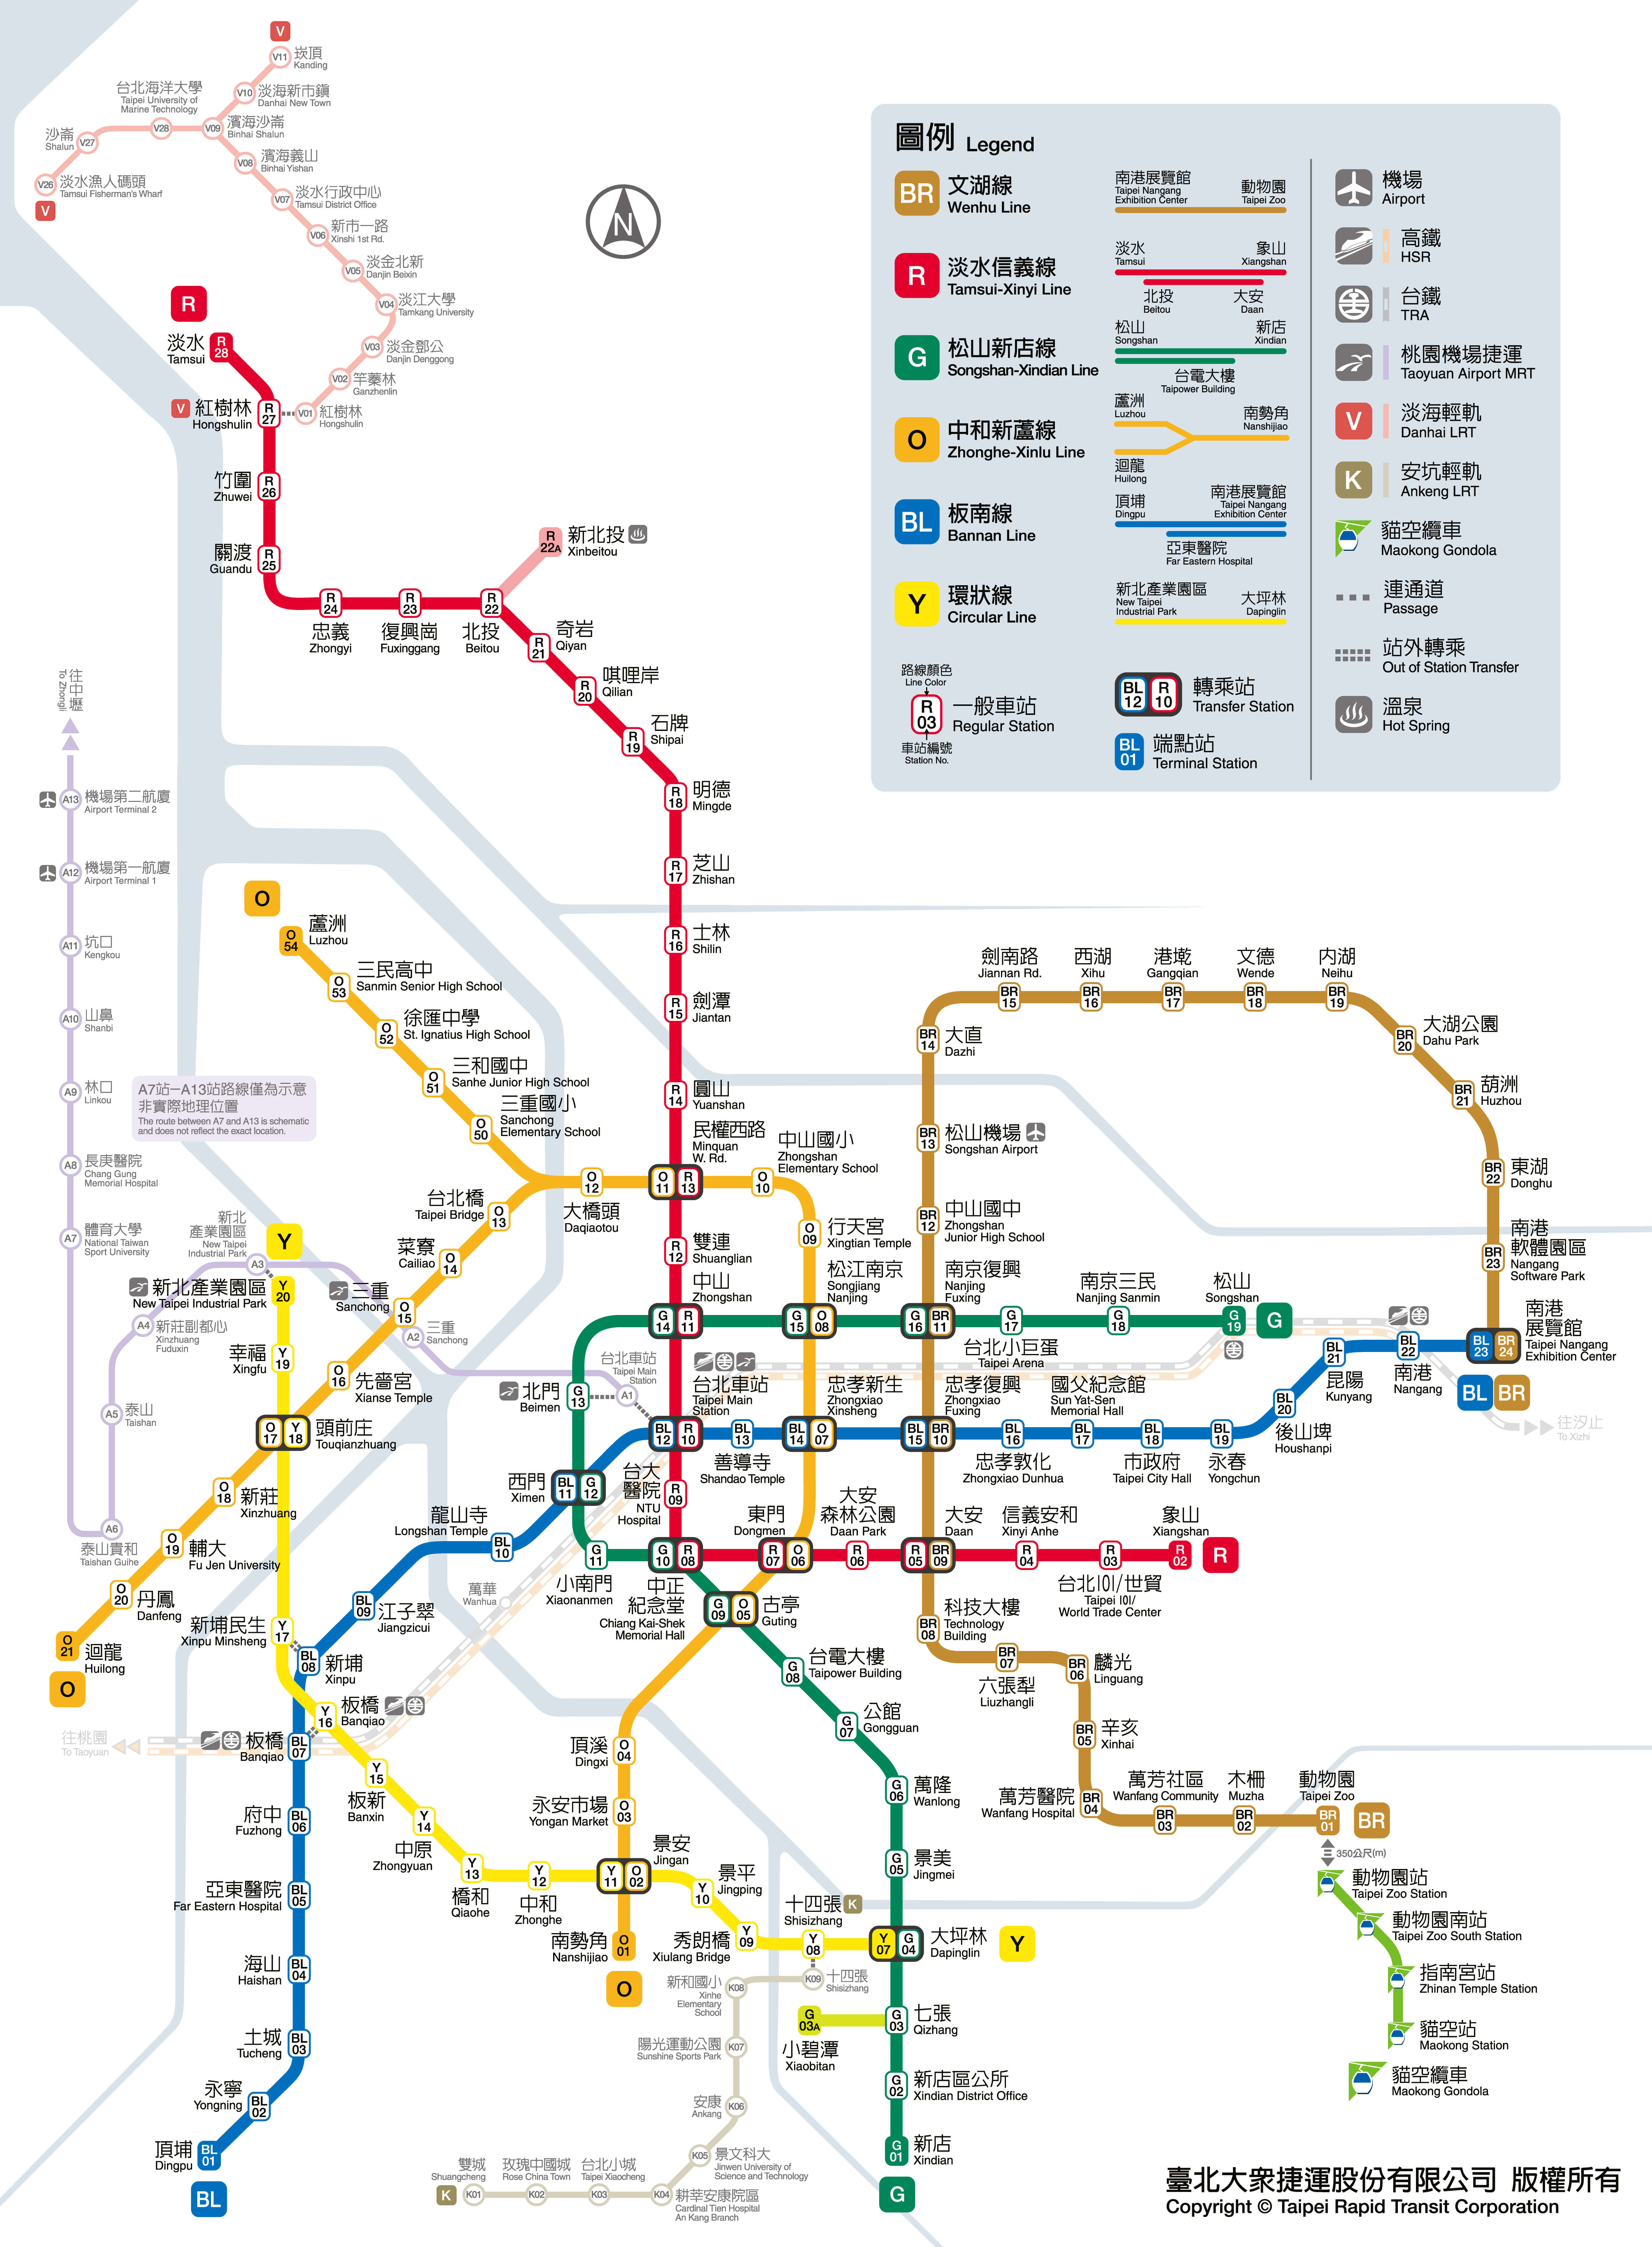 Bảng thống kê Bản đồ ga chế Uyn Đài Loan theo từng khu vực chi tiết